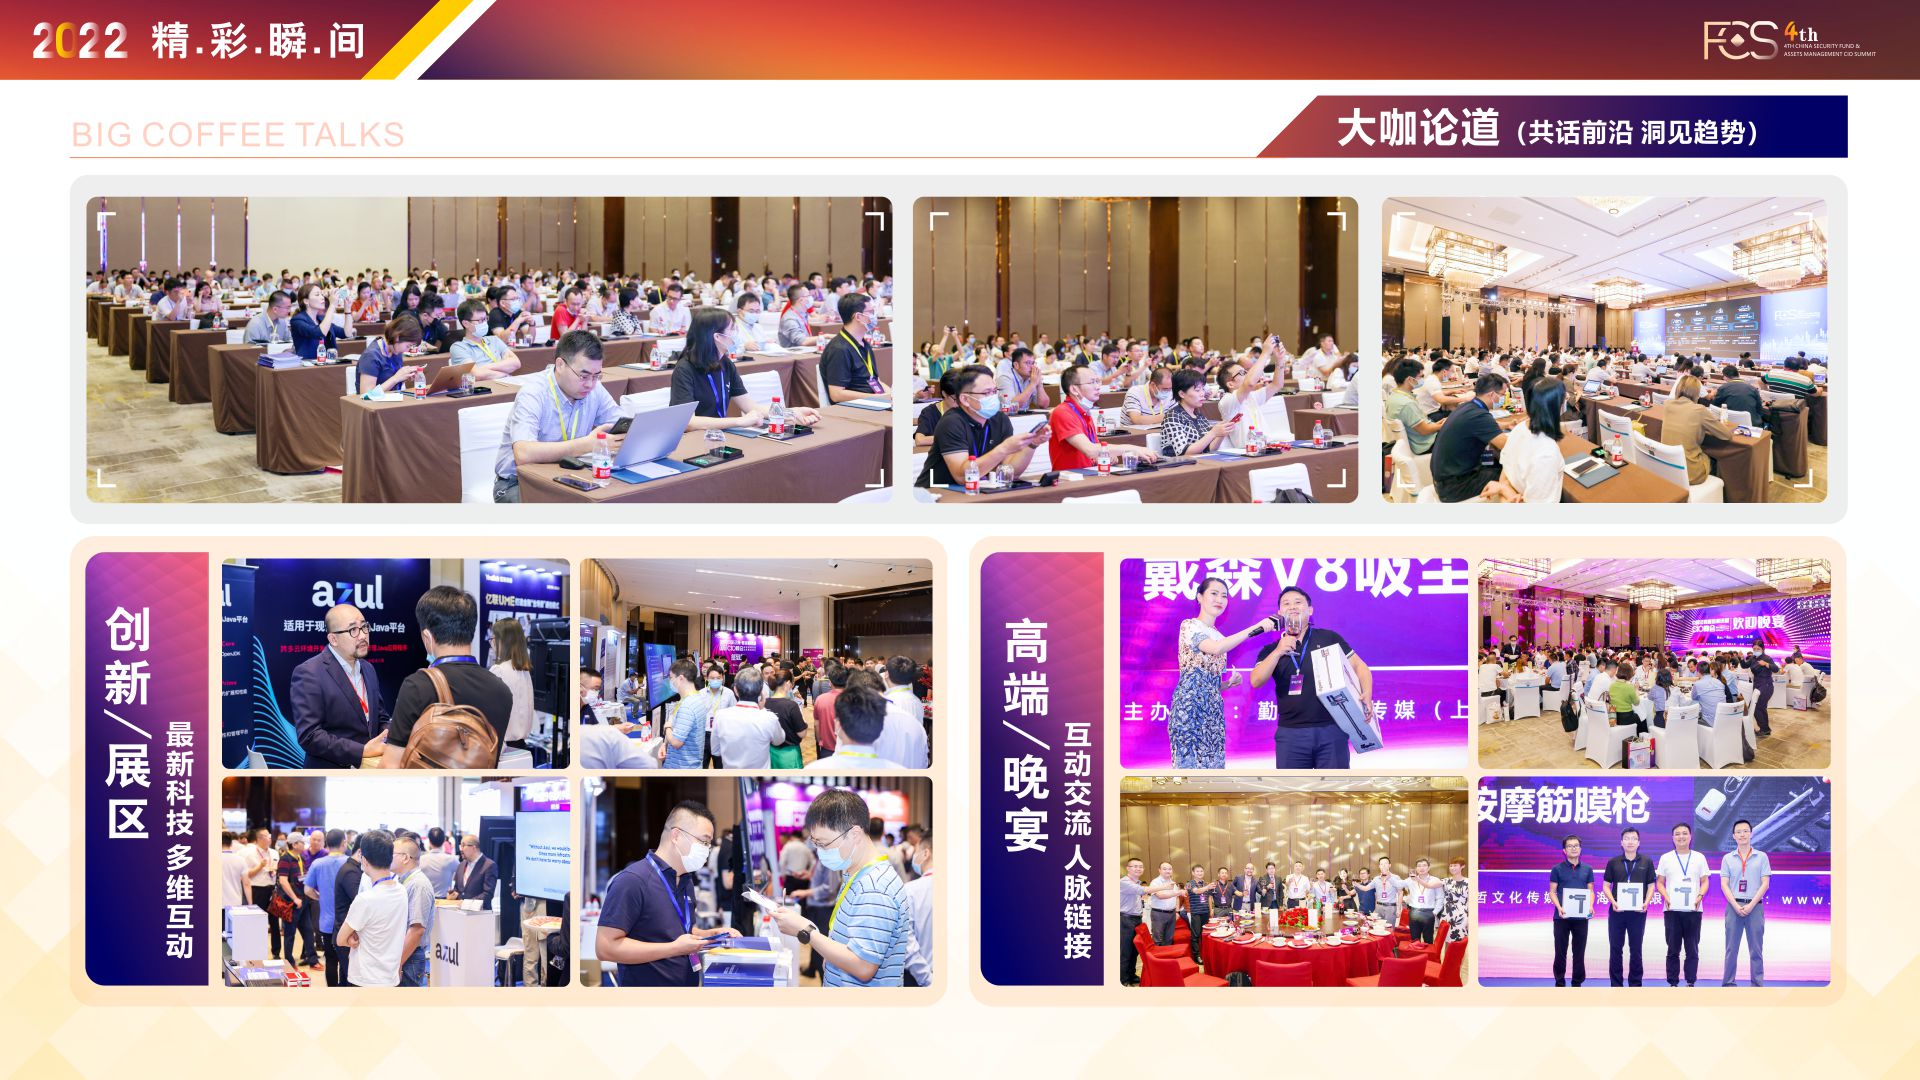 FCS 2022第四届中国证券基金与资管CIO峰会